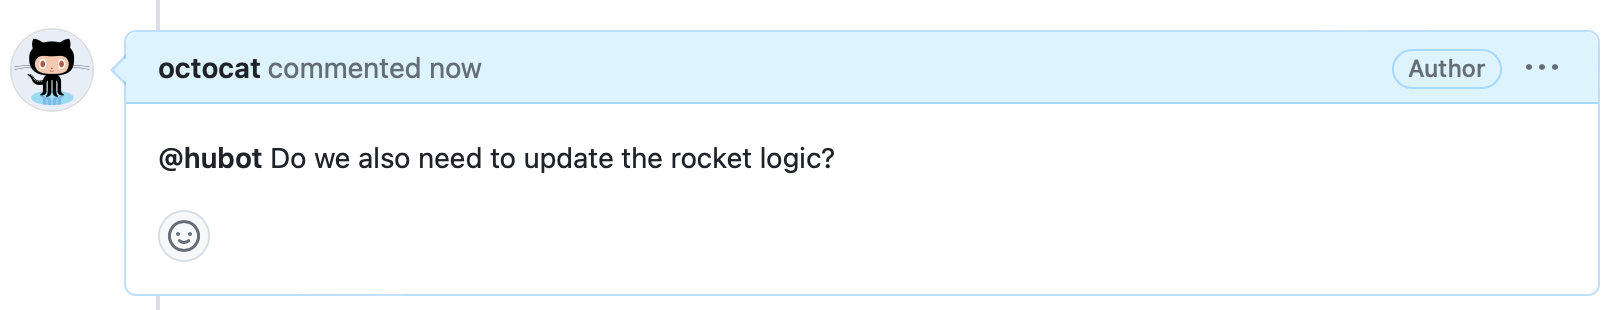 Снимок экрана: комментарий к проблеме. Заголовок говорит "octocat прокомментировал сейчас", а тело говорит: "@hubot Нам также нужно обновить логику ракеты?"